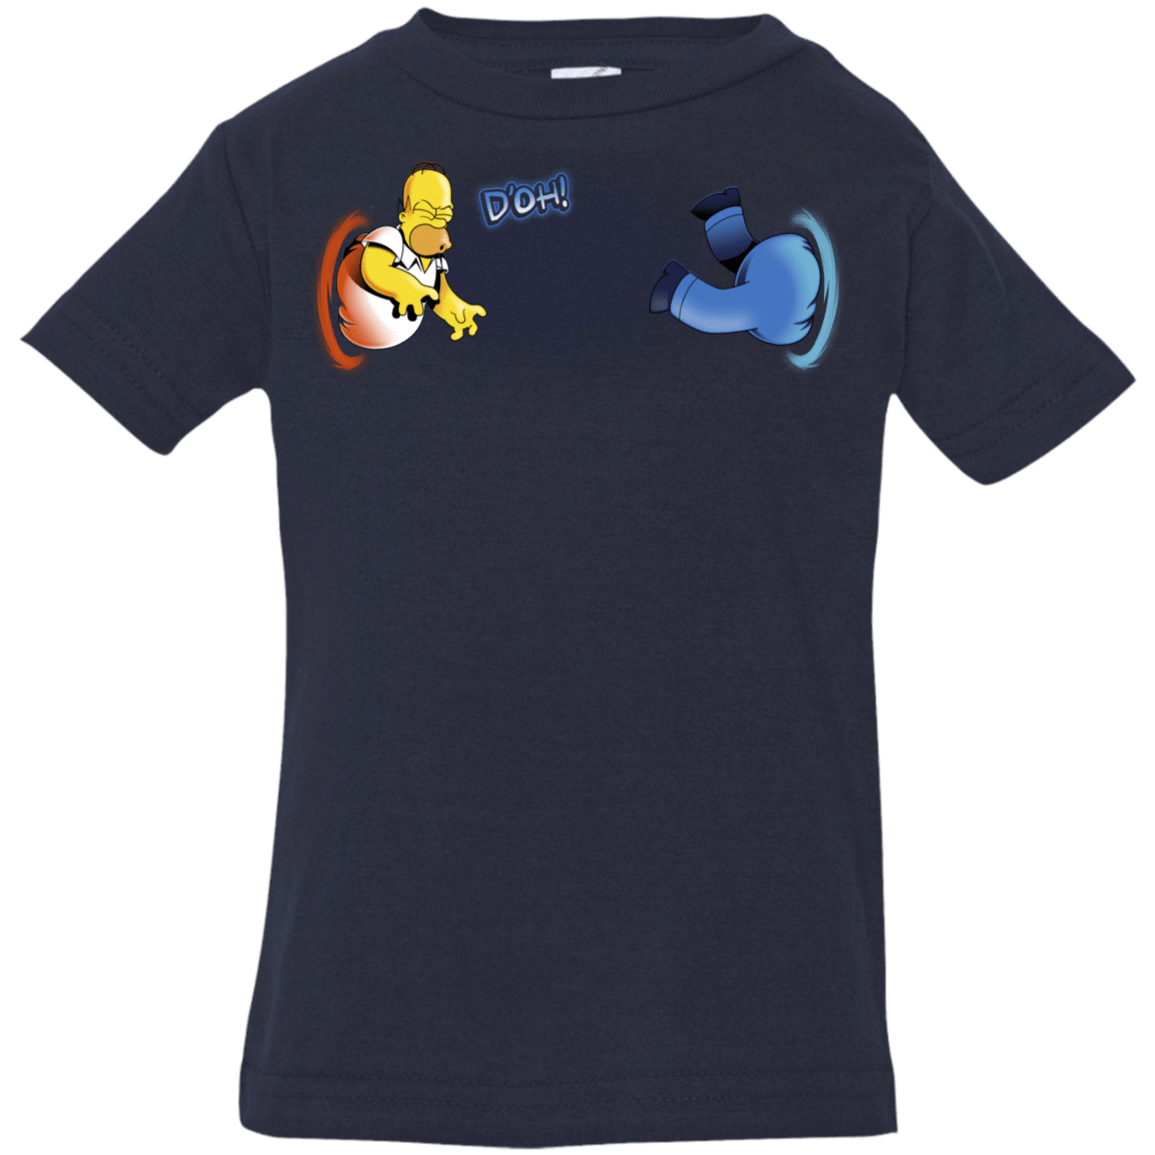 T-Shirts Navy / 6 Months Portal D'oh Infant Premium T-Shirt